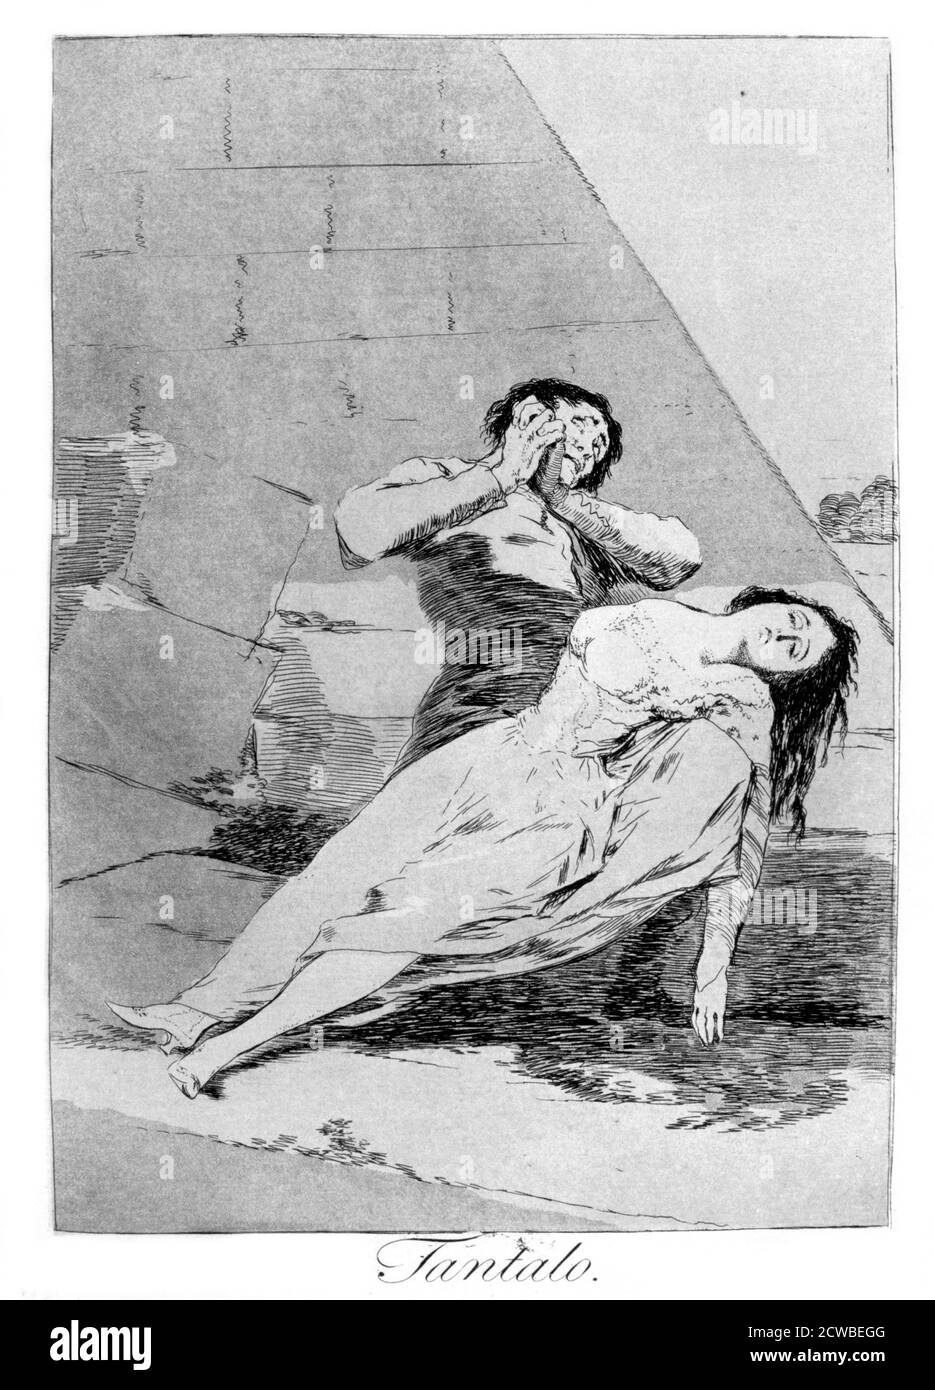 Tantalas', 1799 artiste: Francisco Goya. Assiette 9 de 'Los Caprichos'. Los Caprichos est un ensemble de 80 tirages en aquatinte et gravure créés par l'artiste espagnol Francisco Goya en 1797 et 1798, et publiés comme un album en 1799. Banque D'Images